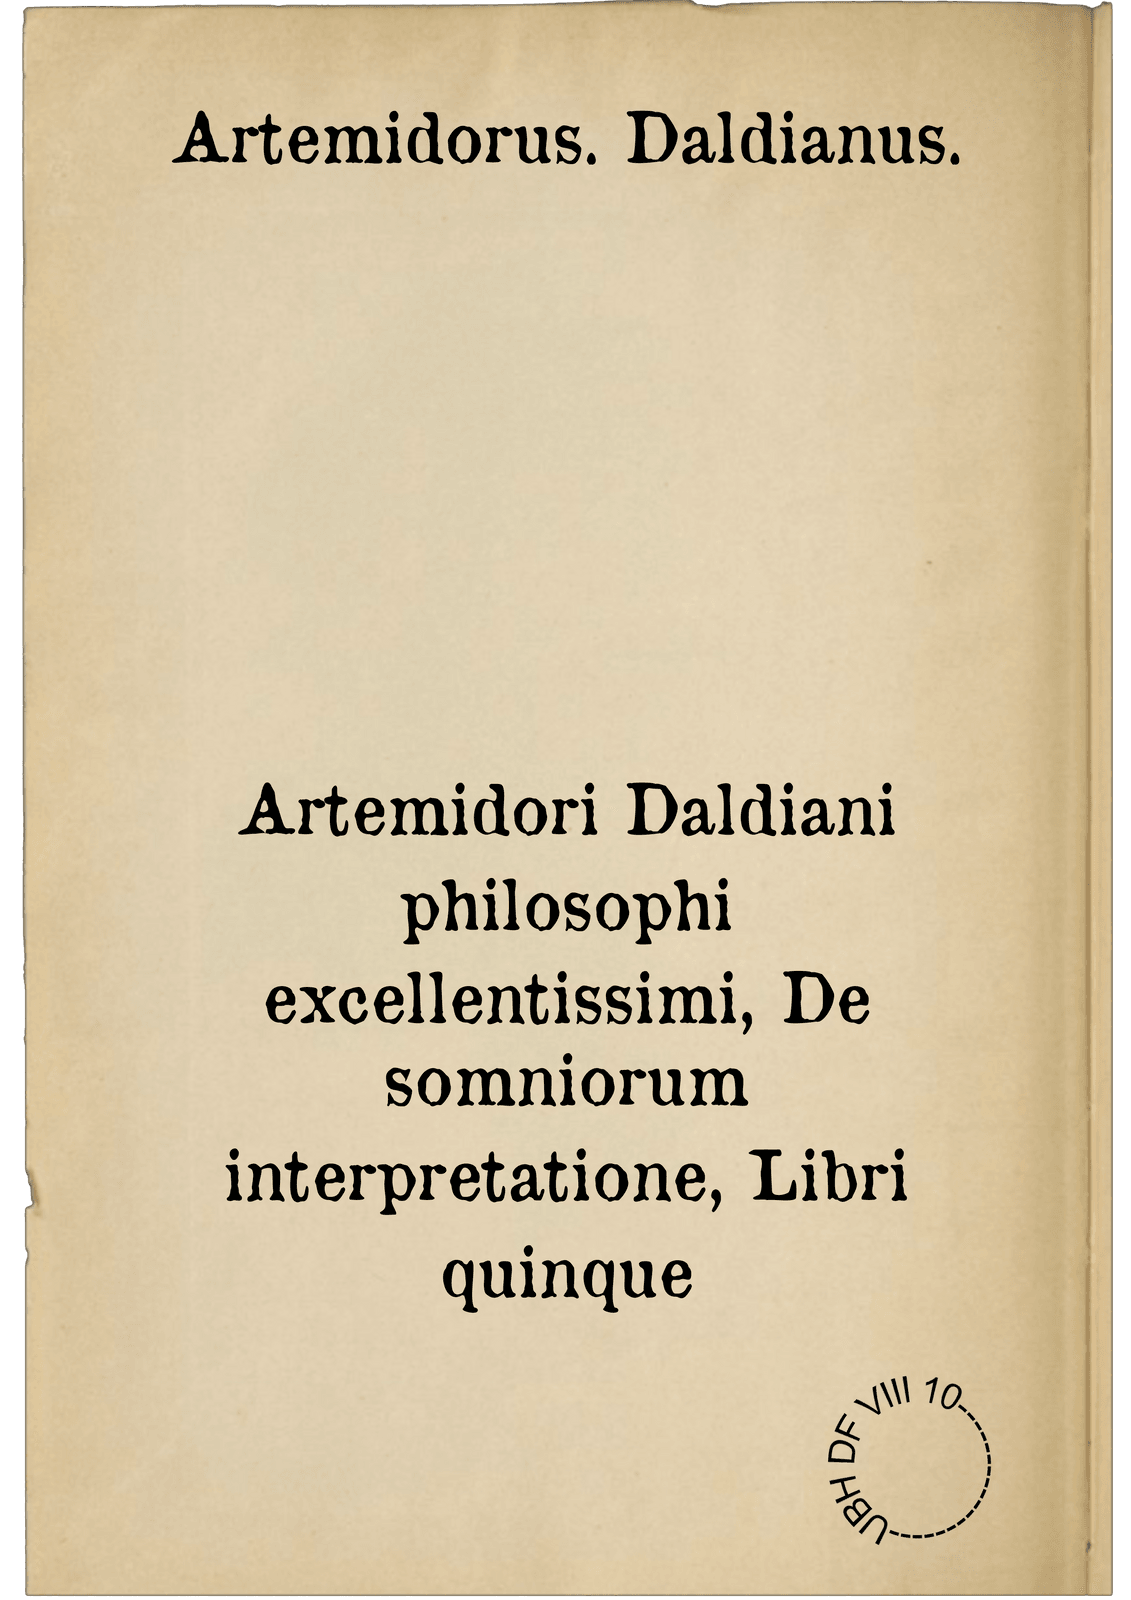 Artemidori Daldiani philosophi excellentissimi, De somniorum interpretatione, Libri quinque